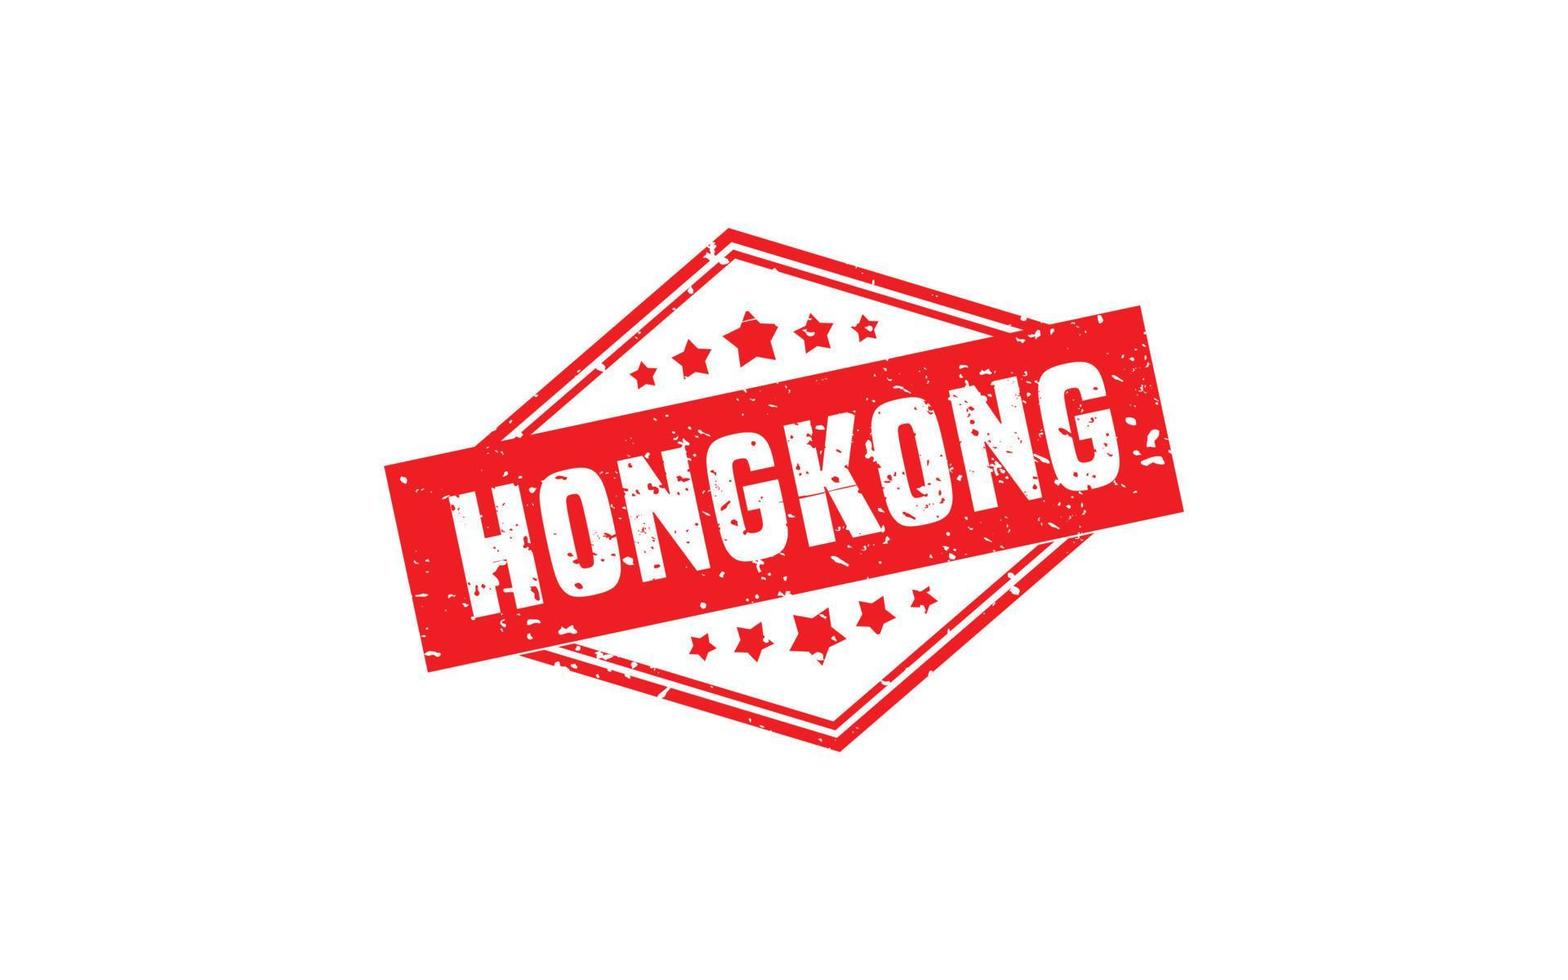 Hongkong-Stempelgummi mit Grunge-Stil auf weißem Hintergrund vektor